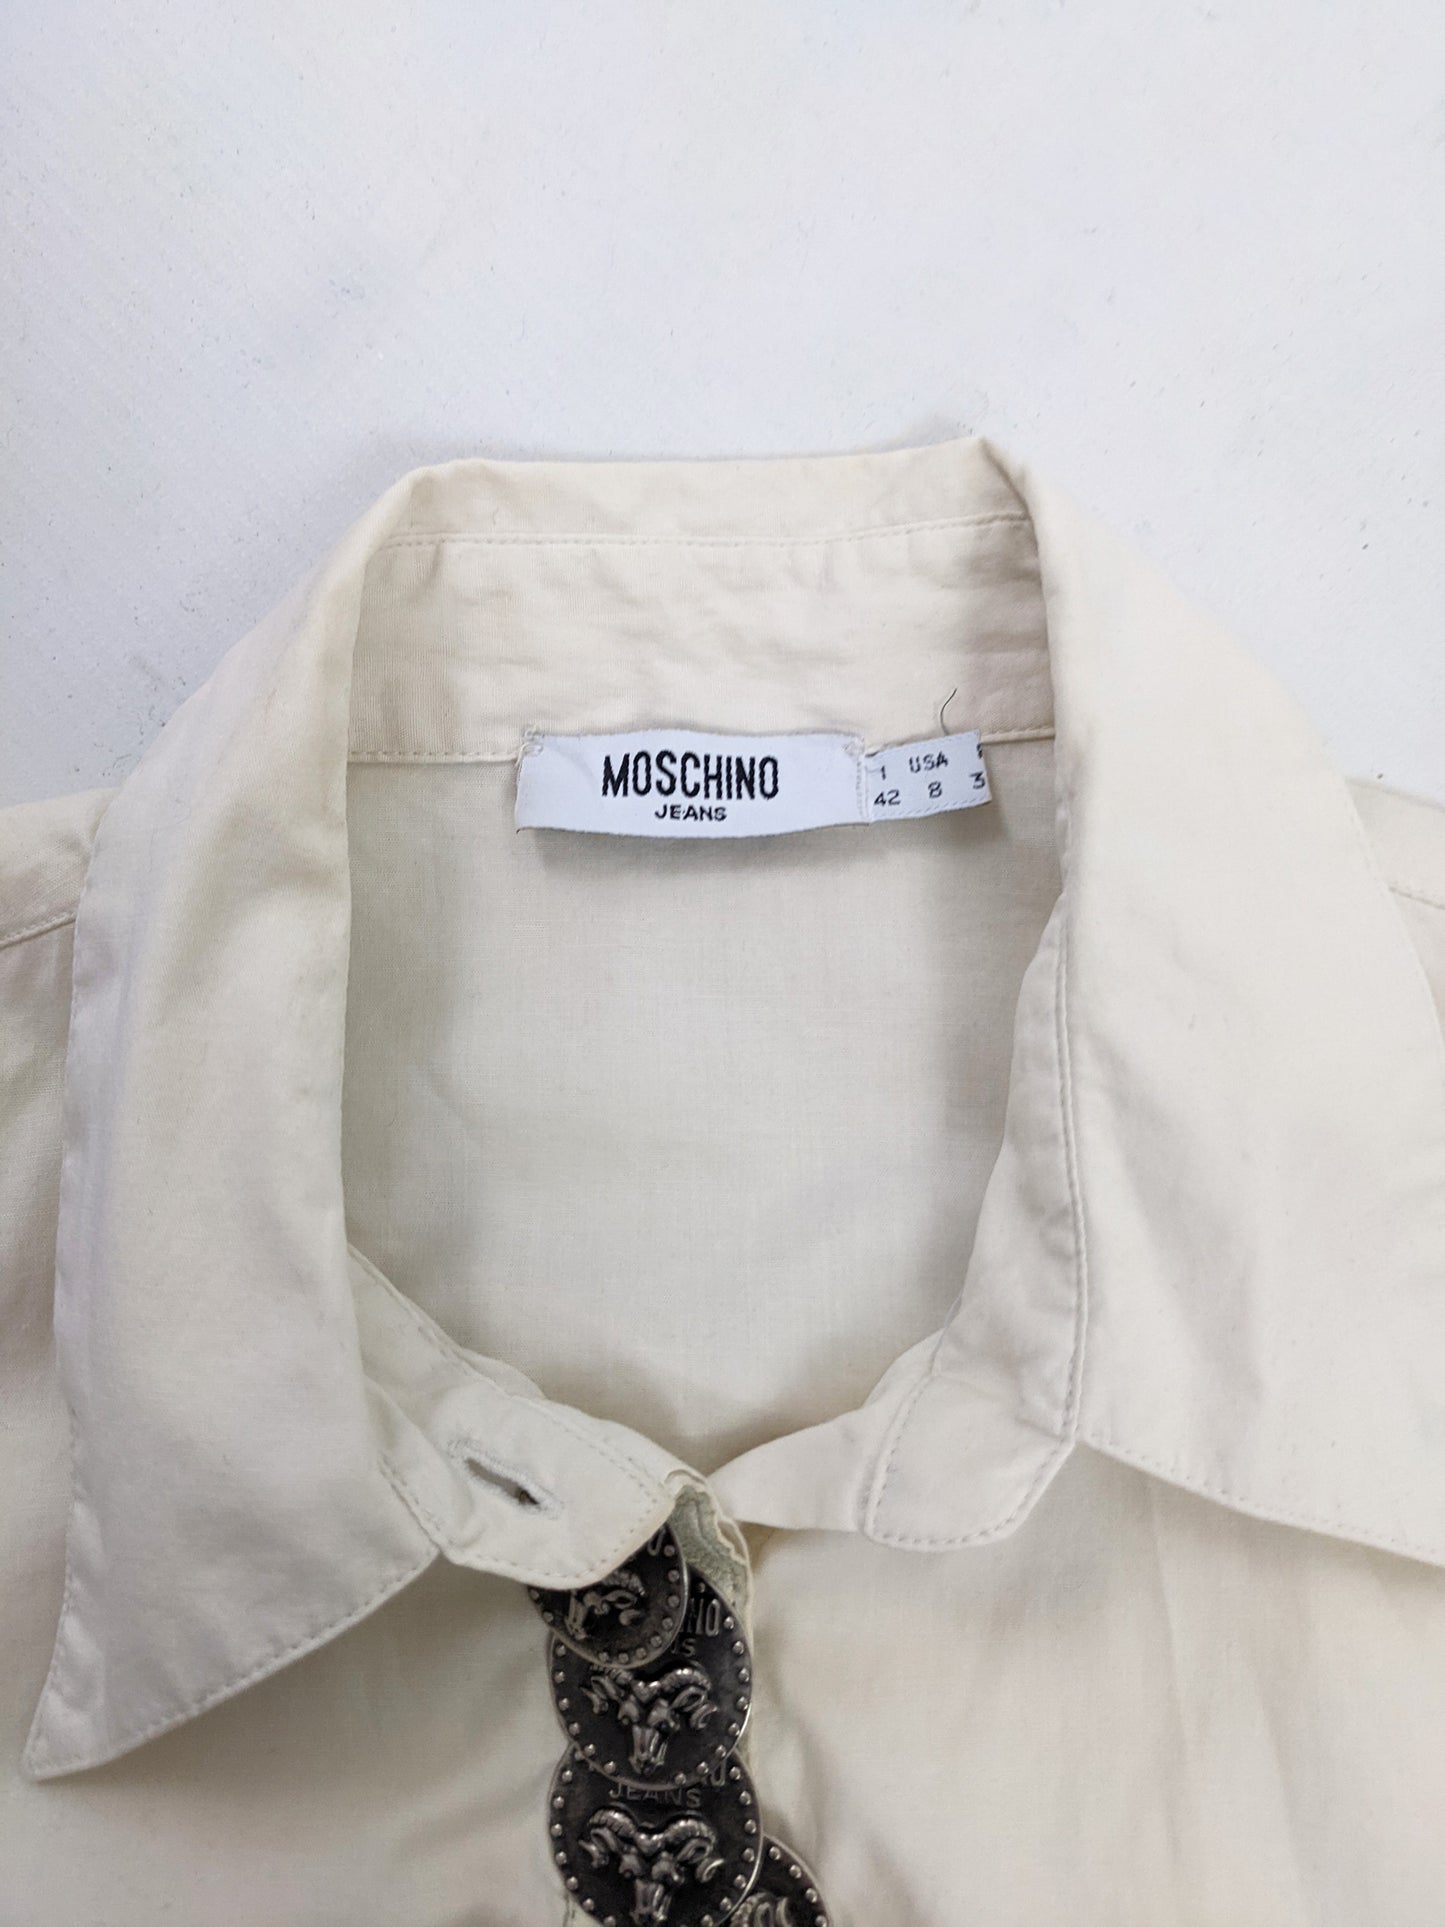 Moschino Vintage Cream Stretch Cotton Western Shirt, 1990s